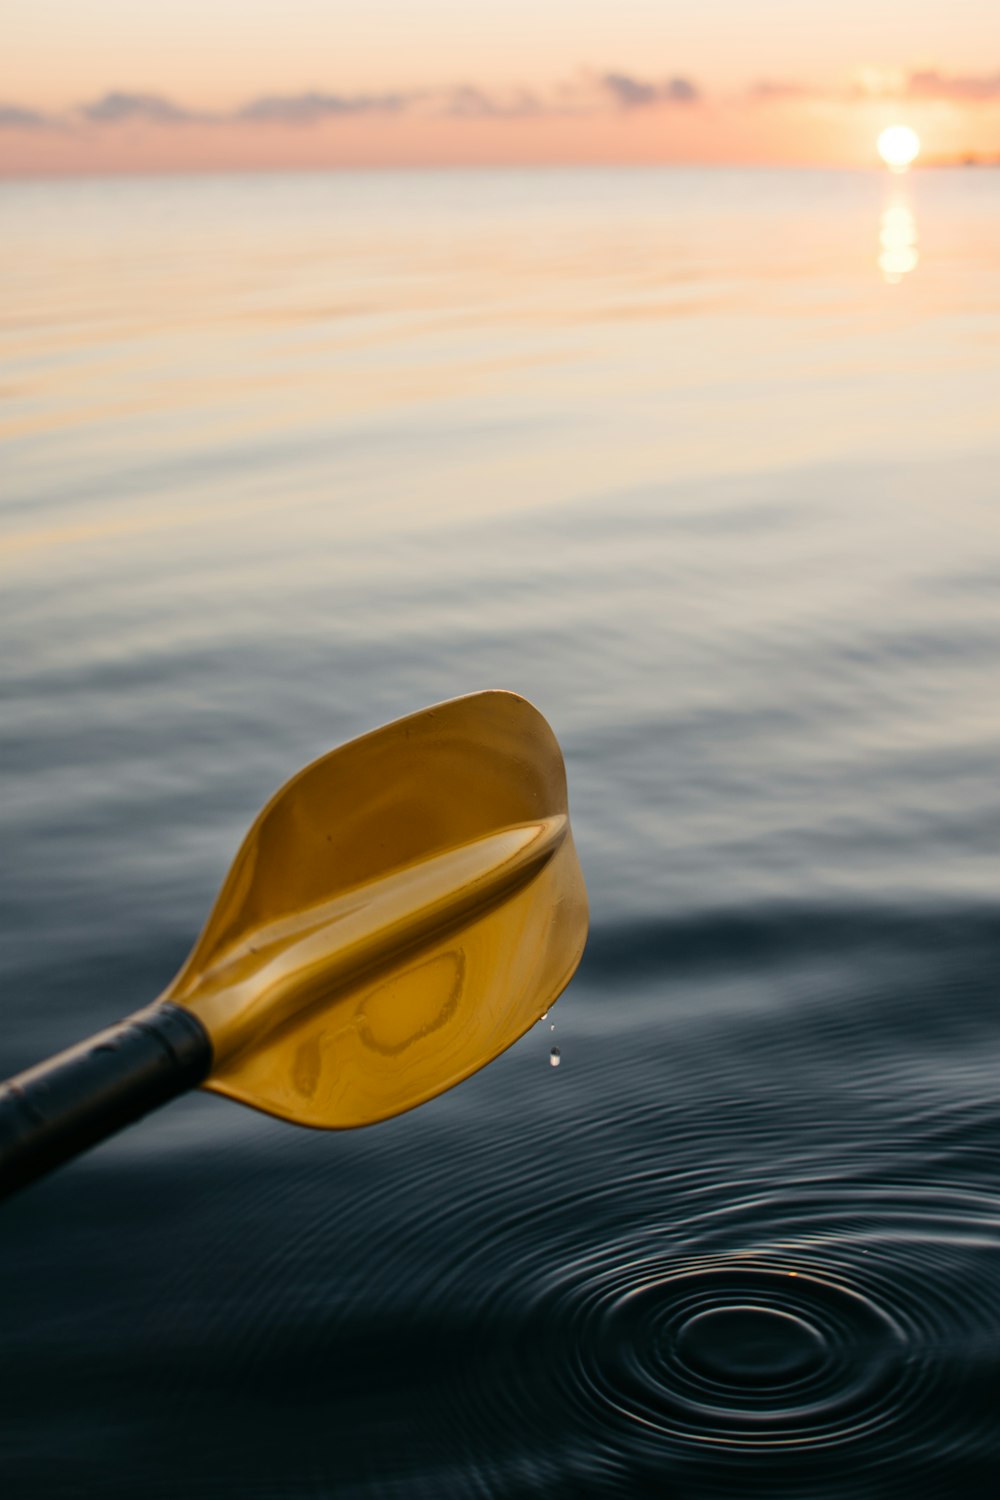 Remo da barca color oro sopra l'acqua del mare durante l'ora d'oro